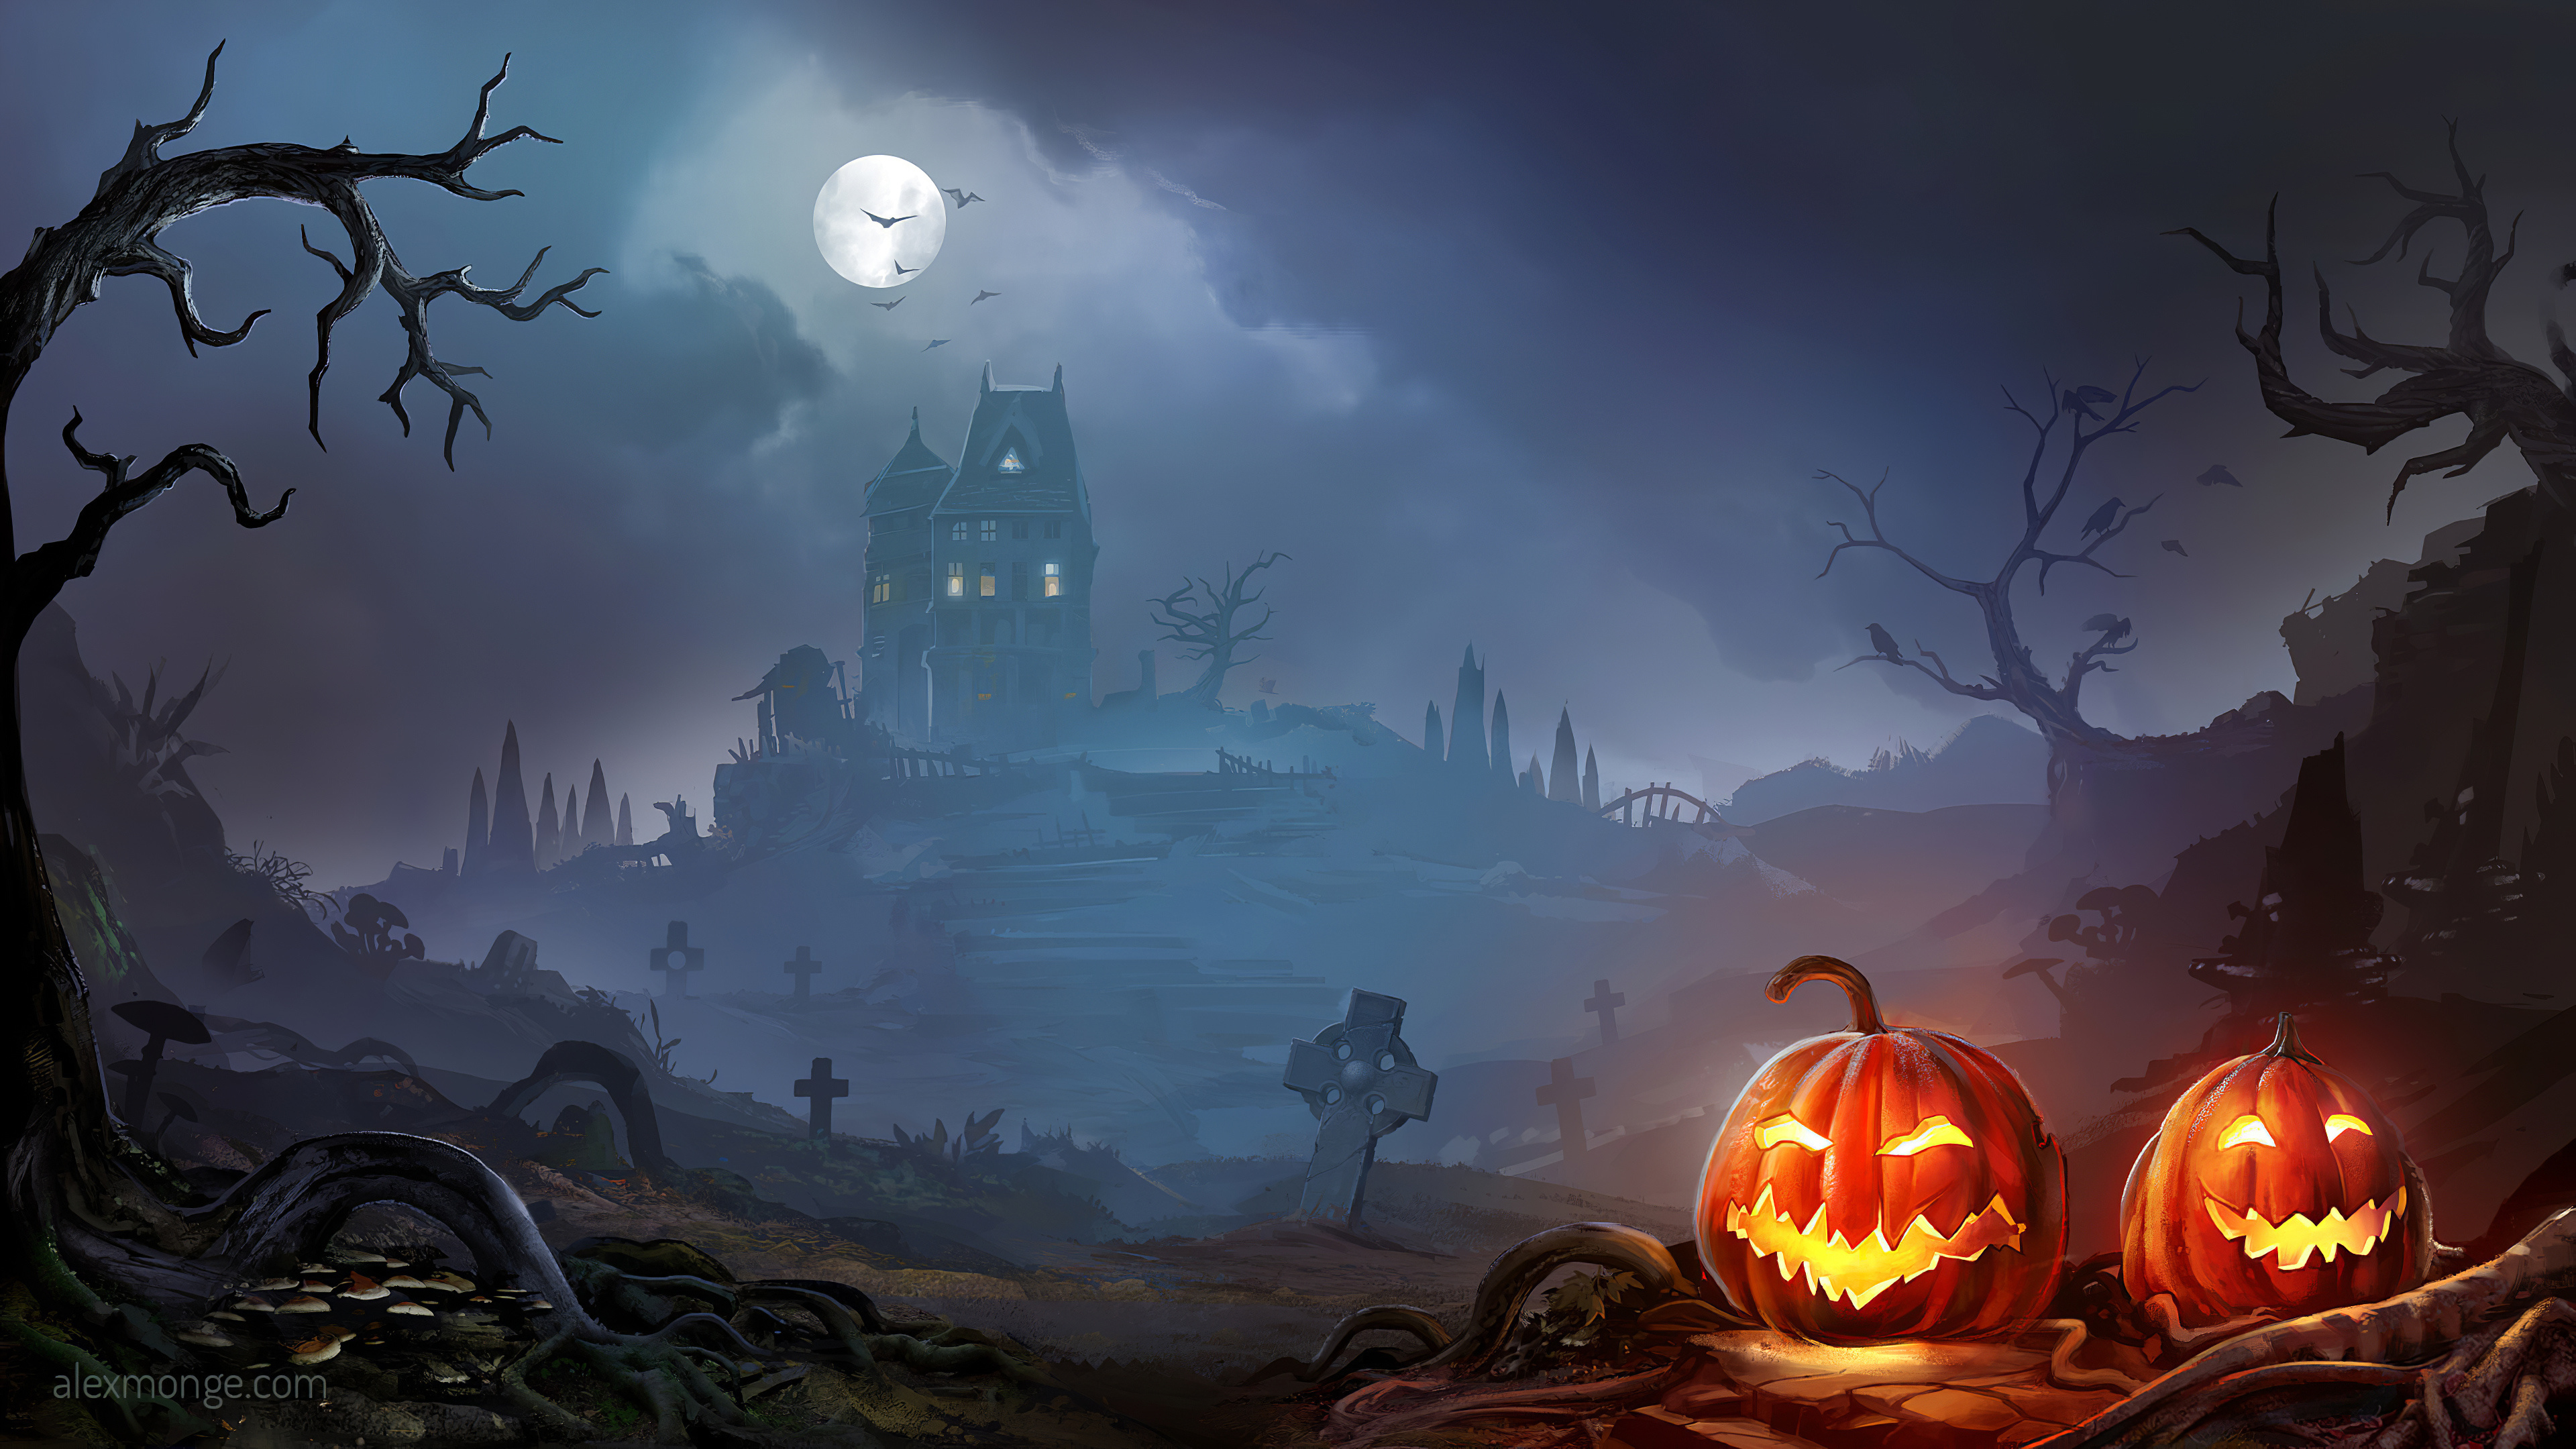 Halloween Haunted House, 3840x2160 wallpapers, Halloween backgrounds, 3840x2160 4K Desktop